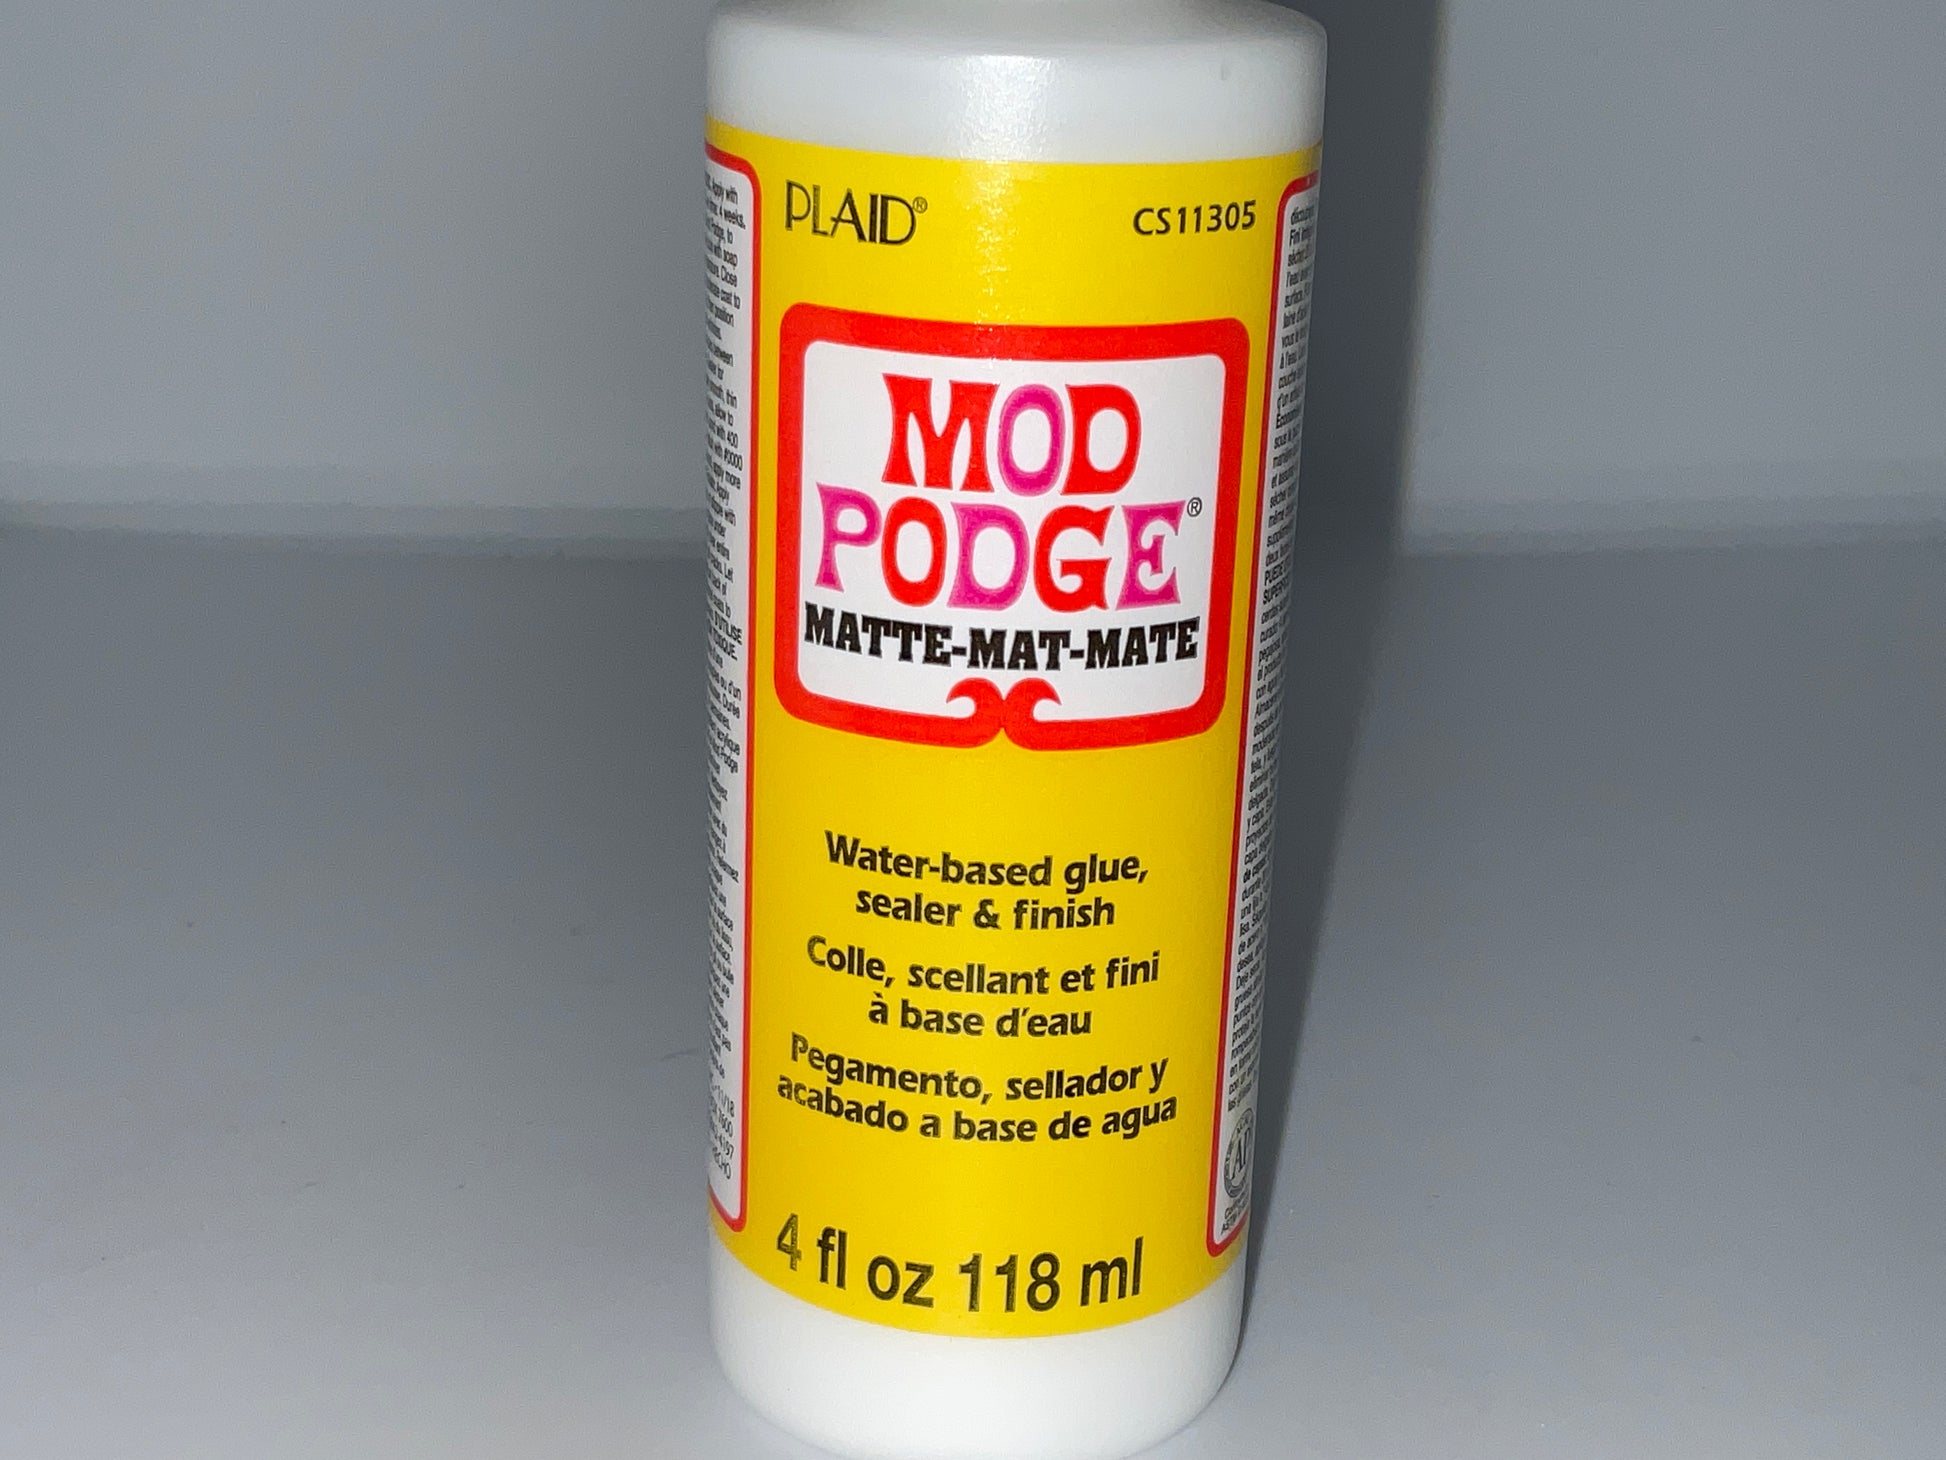 Plaid Mod Podge Clear Acrylic Sealer, 12 oz., Matte